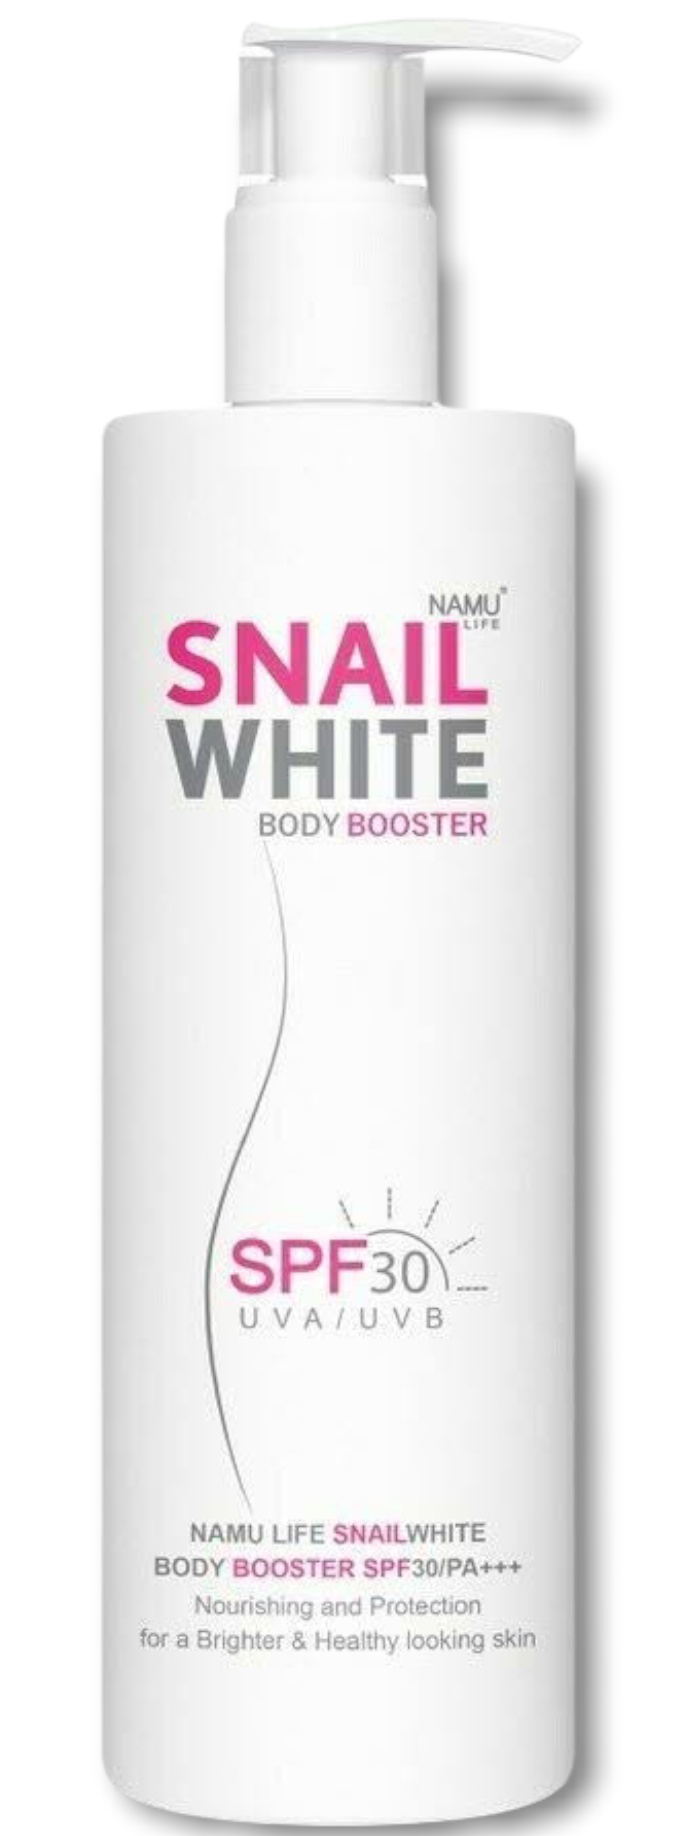 SNAILWHITE Body Booster SPF 30/PA+++